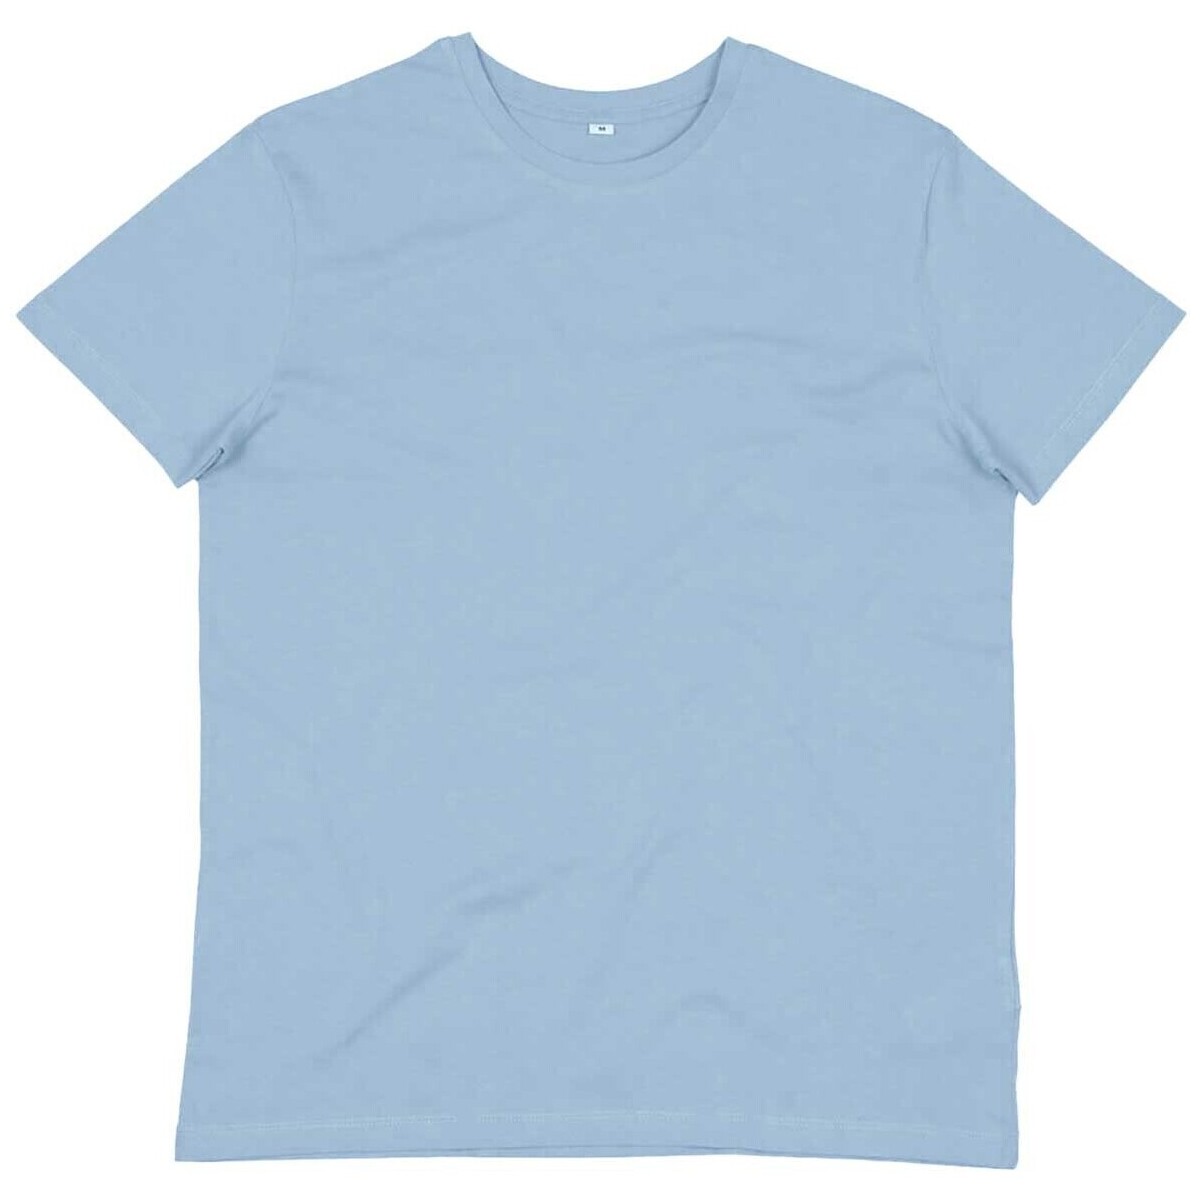 Vêtements Homme T-shirts manches courtes Mantis M01 Bleu